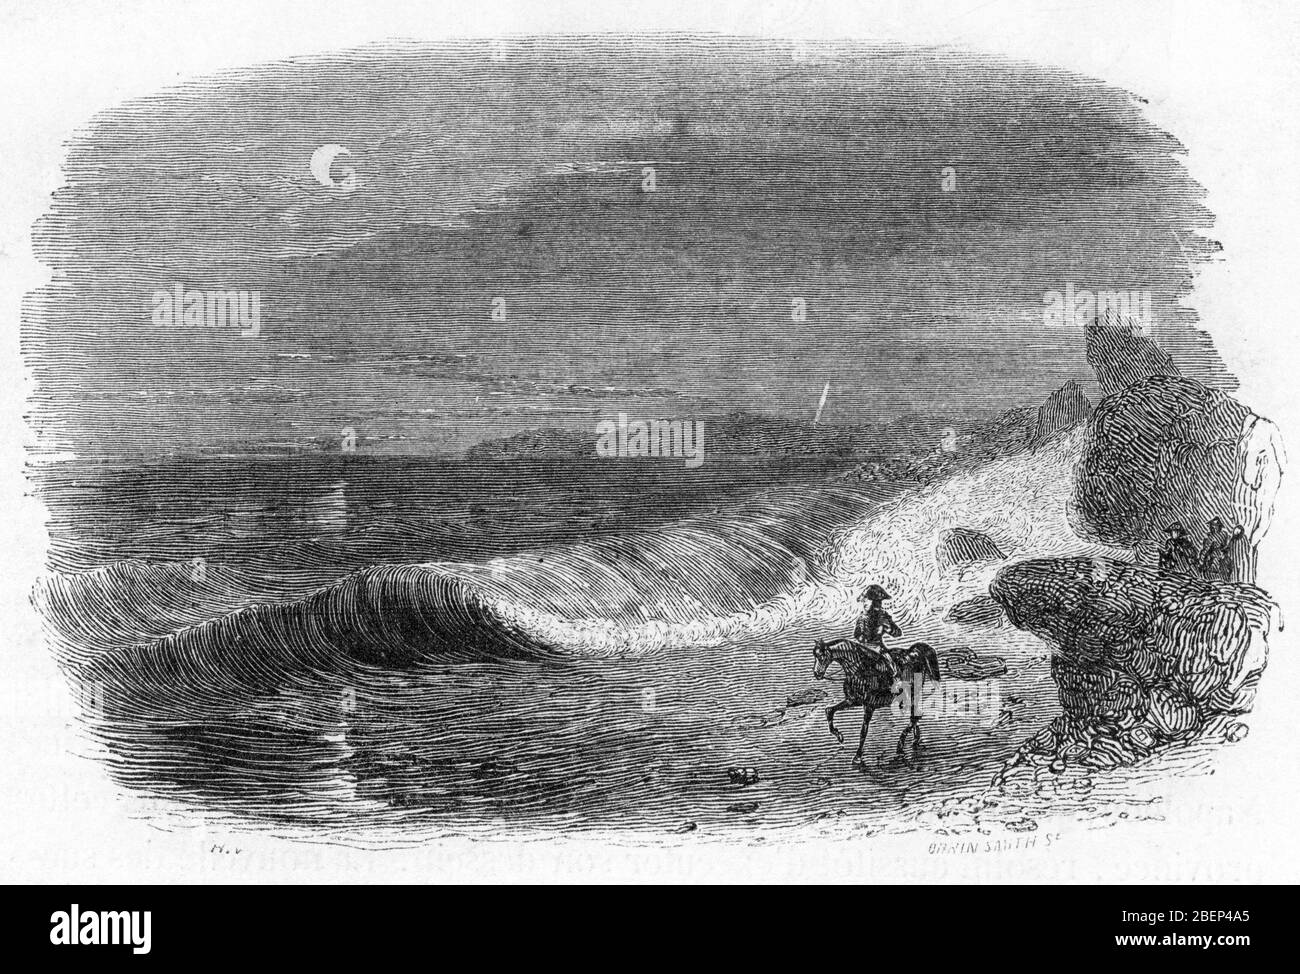 Campagne d'Egypte : Napoleon Bonaparte (1769-1821) venu inspecter la possibilite de creuser le canal de Suez echappe de peu a la maree de la mer rouge Stock Photo